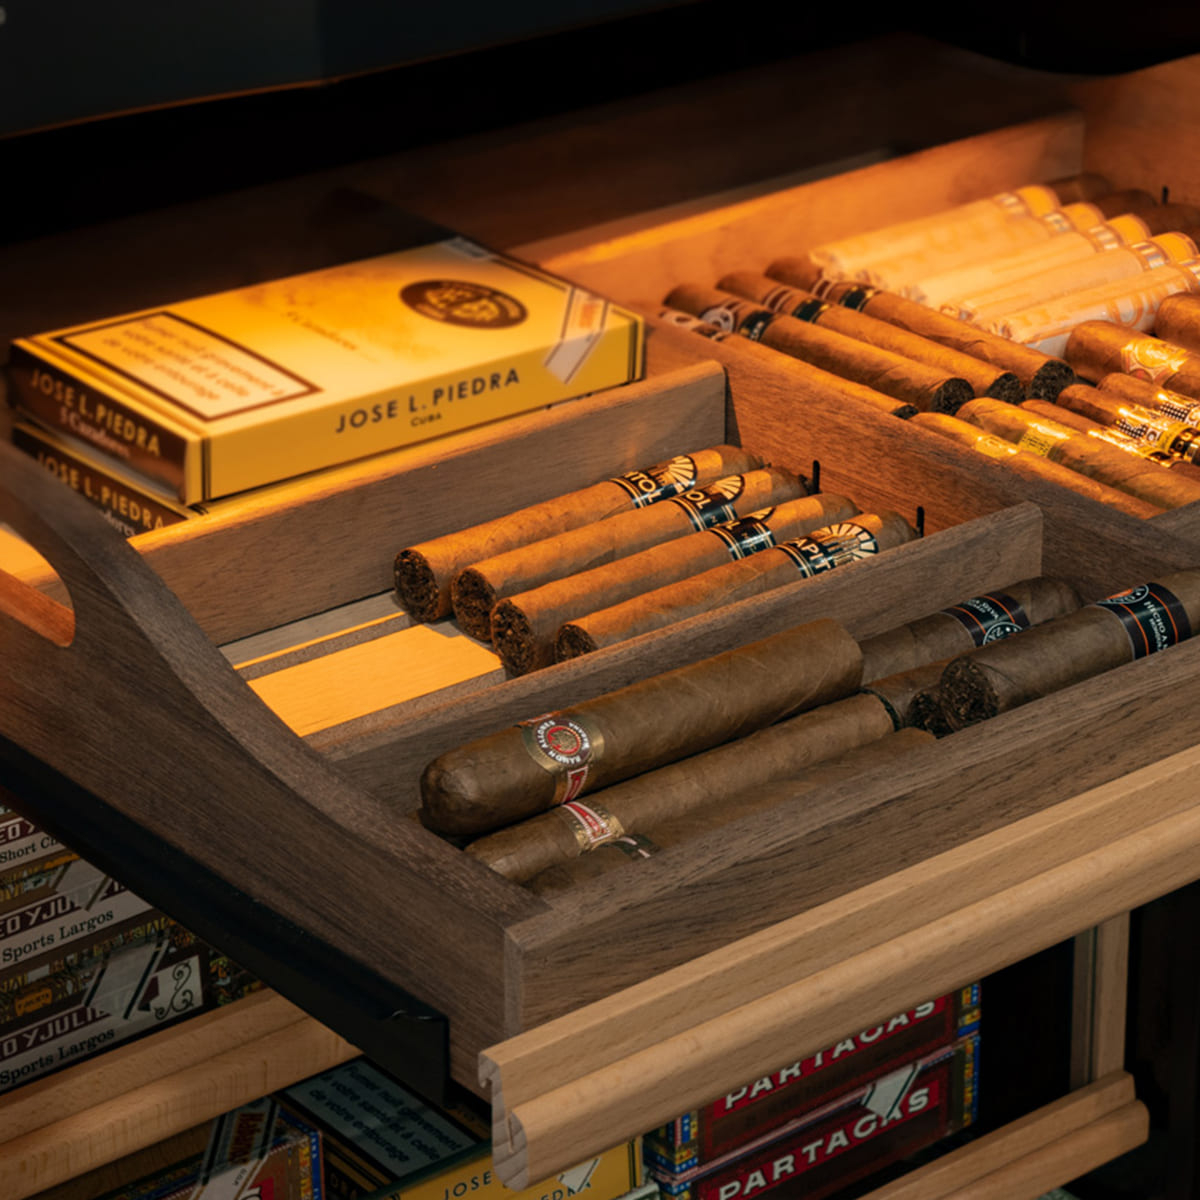 Accessoires Cigare - La Boutique N°1 Pour Amateurs De Cigare